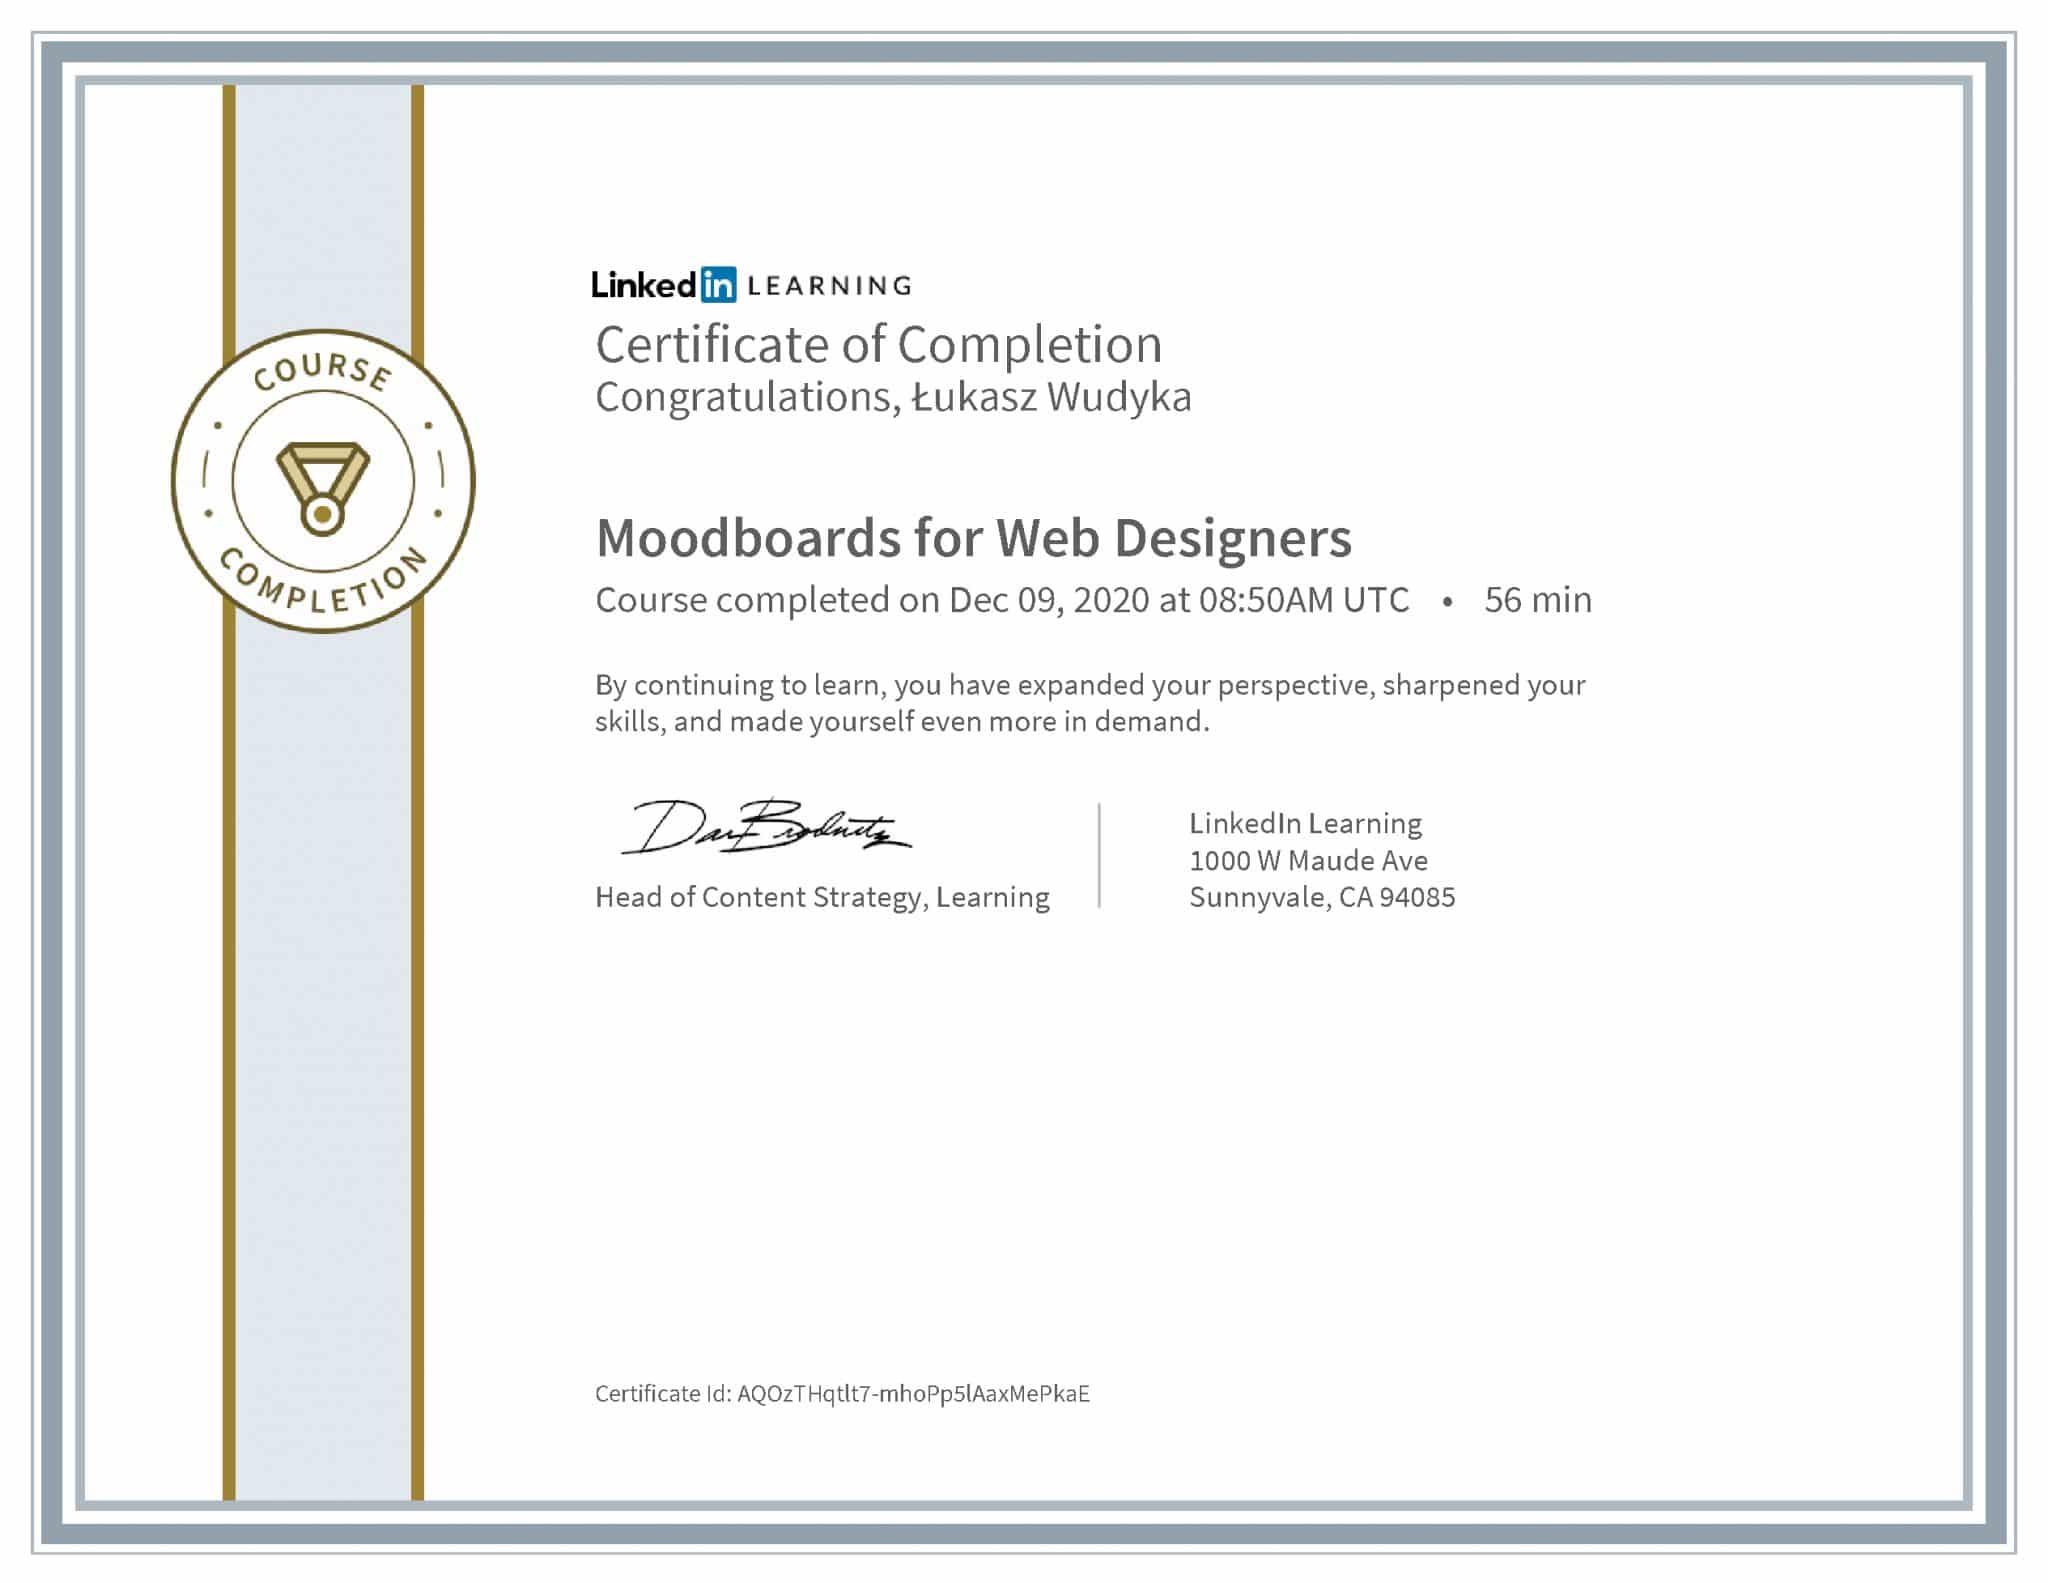 Łukasz Wudyka certyfikat LinkedIn Moodboards for Web Designers